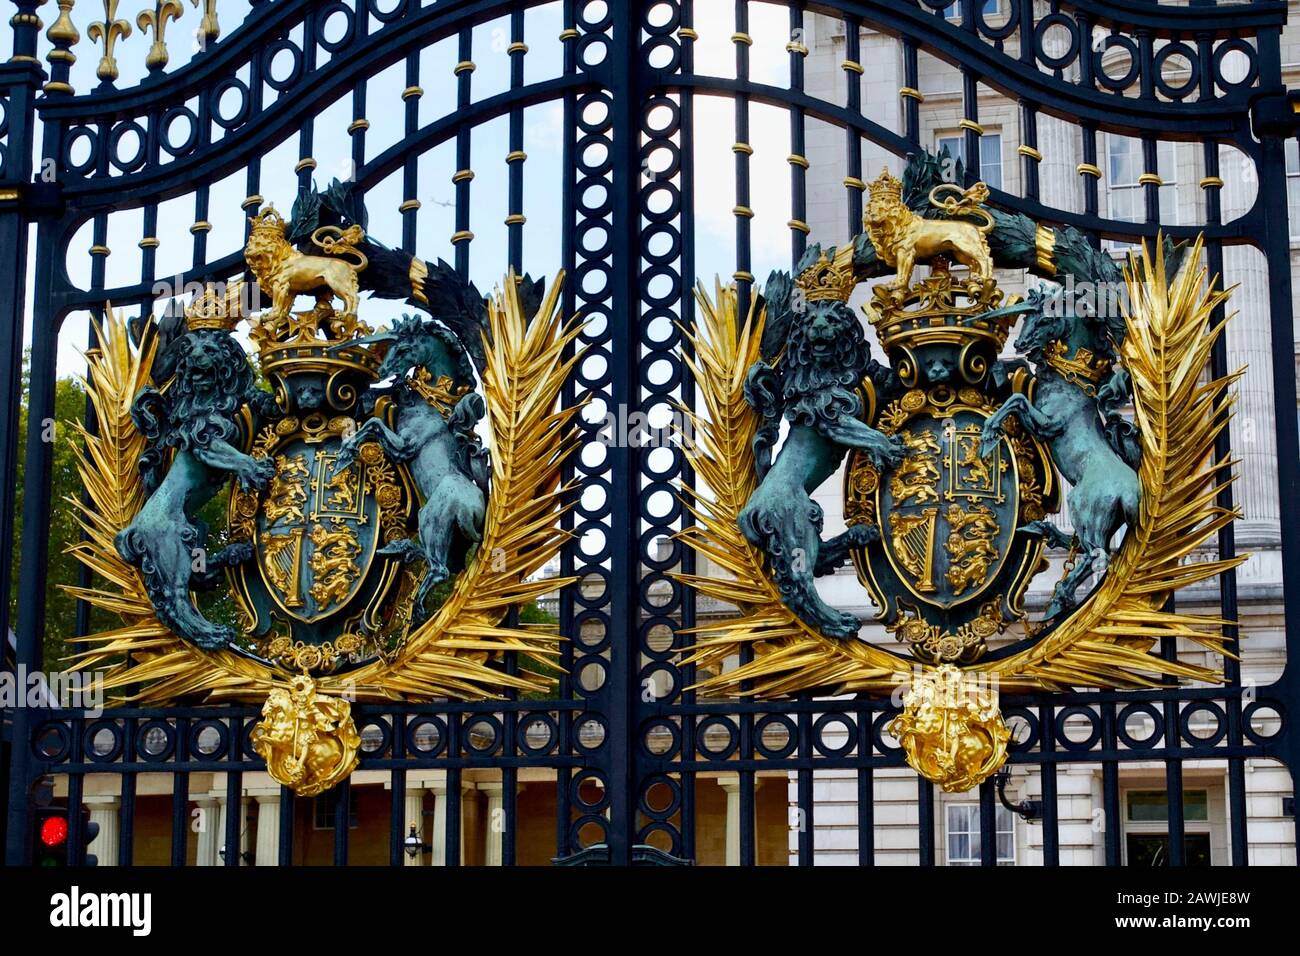 Buckingham Palace gates, City of Westminster, London, England. Stock Photo